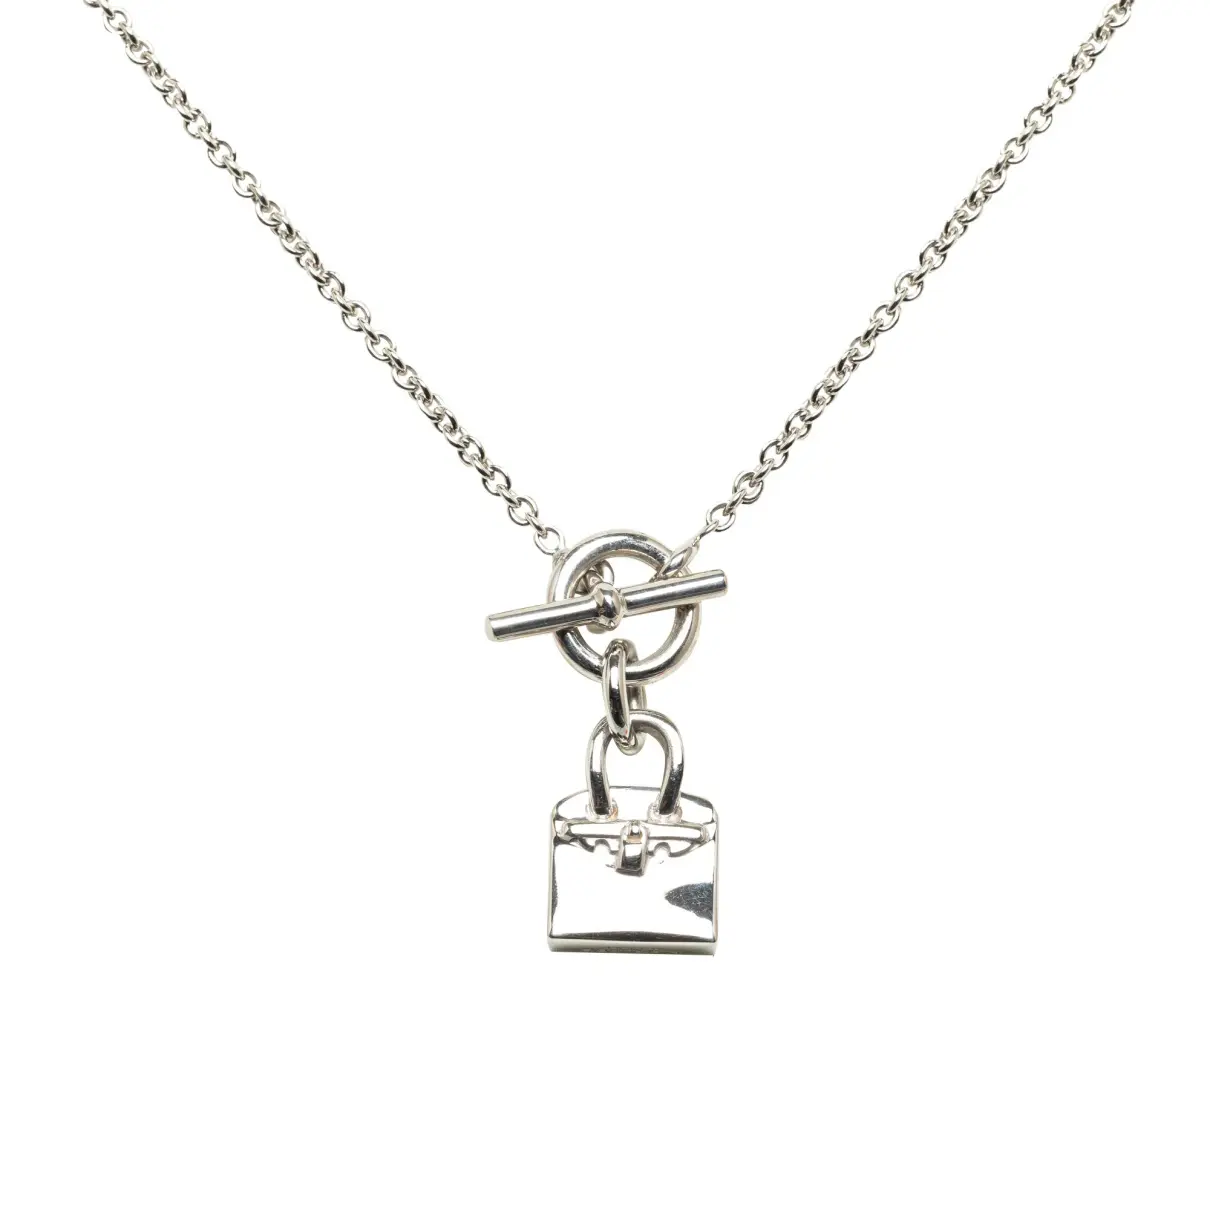 Amulette silver necklace